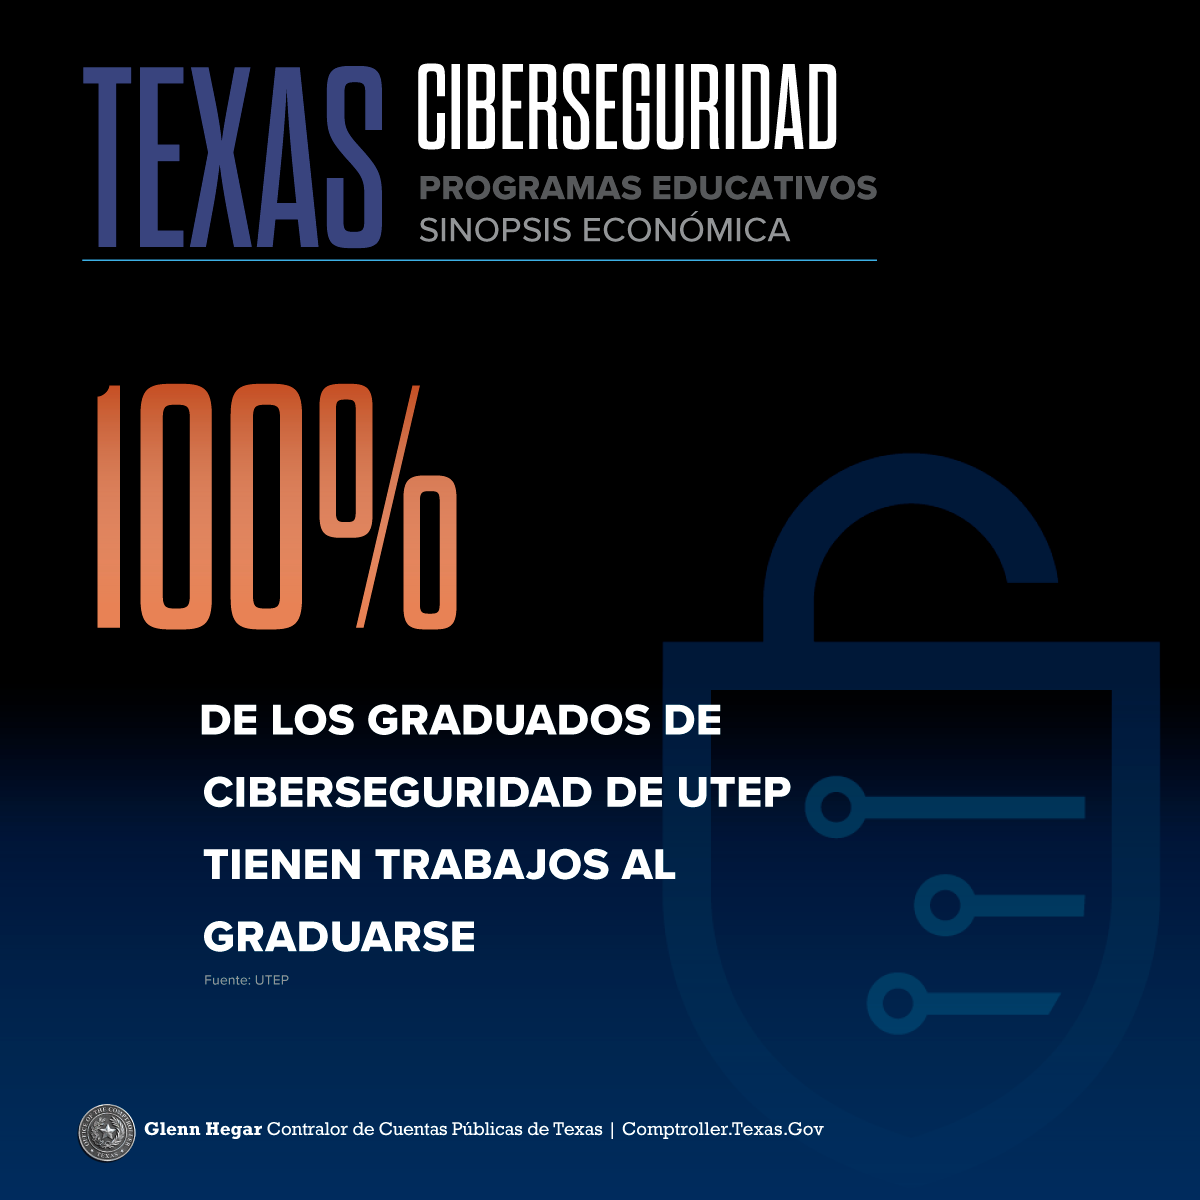 
Programas Educativos de Ciberseguridad de Texas
Instantánea económica El 100% de los graduados de ciberseguridad de UTEP tienen trabajo al graduarse. Fuente: Universidad de Texas en El Paso